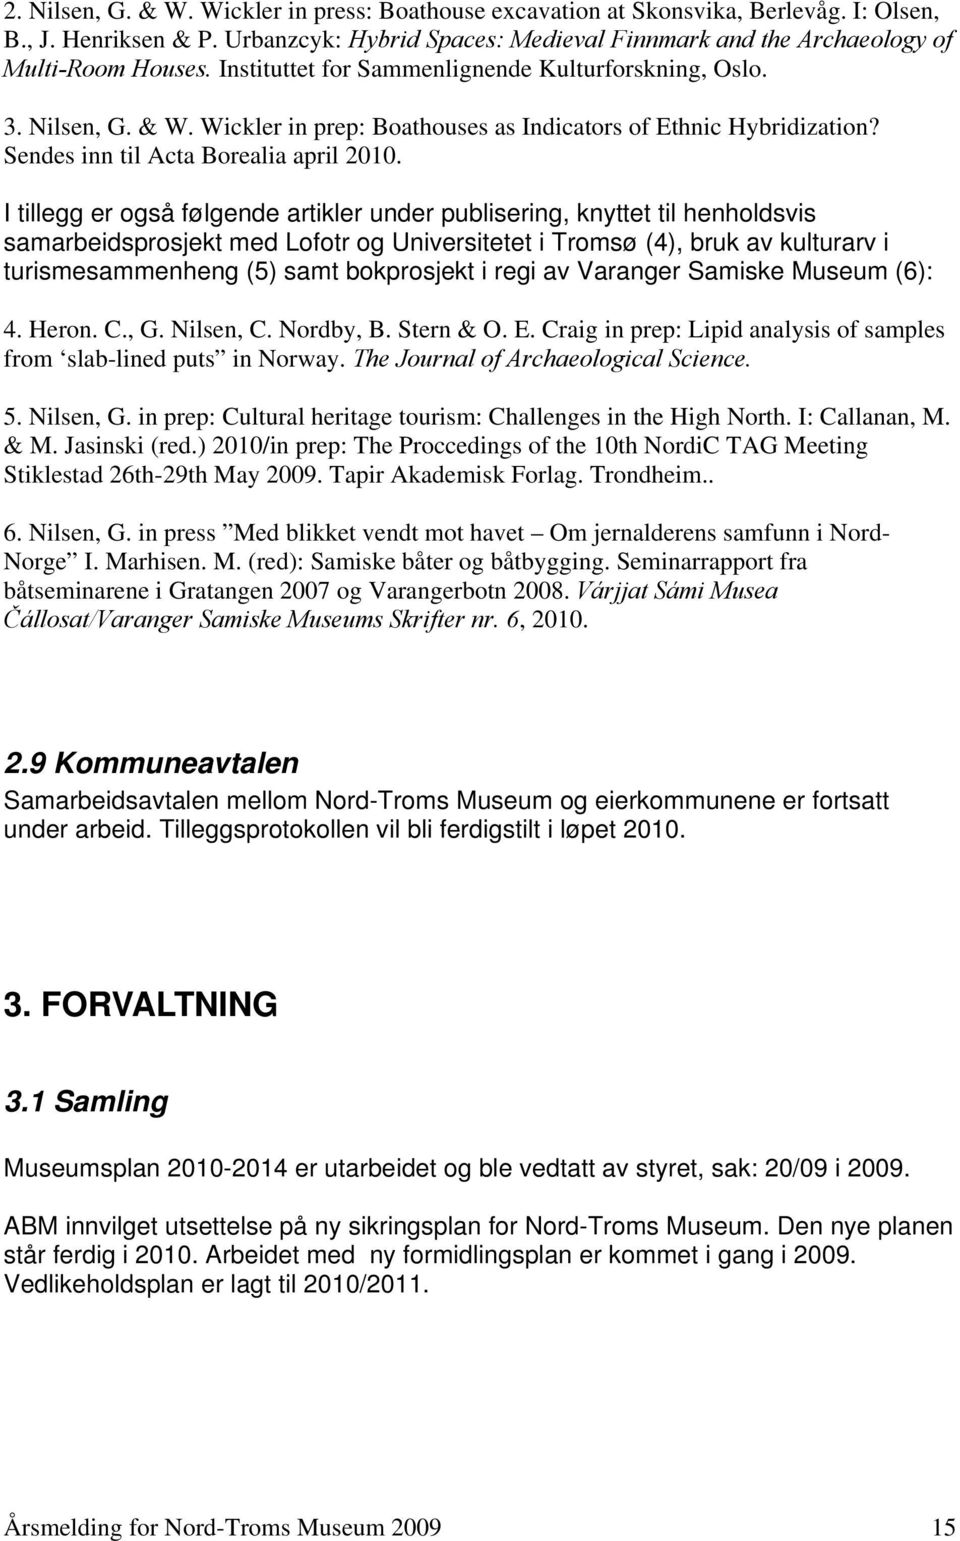 I tillegg er også følgende artikler under publisering, knyttet til henholdsvis samarbeidsprosjekt med Lofotr og Universitetet i Tromsø (4), bruk av kulturarv i turismesammenheng (5) samt bokprosjekt